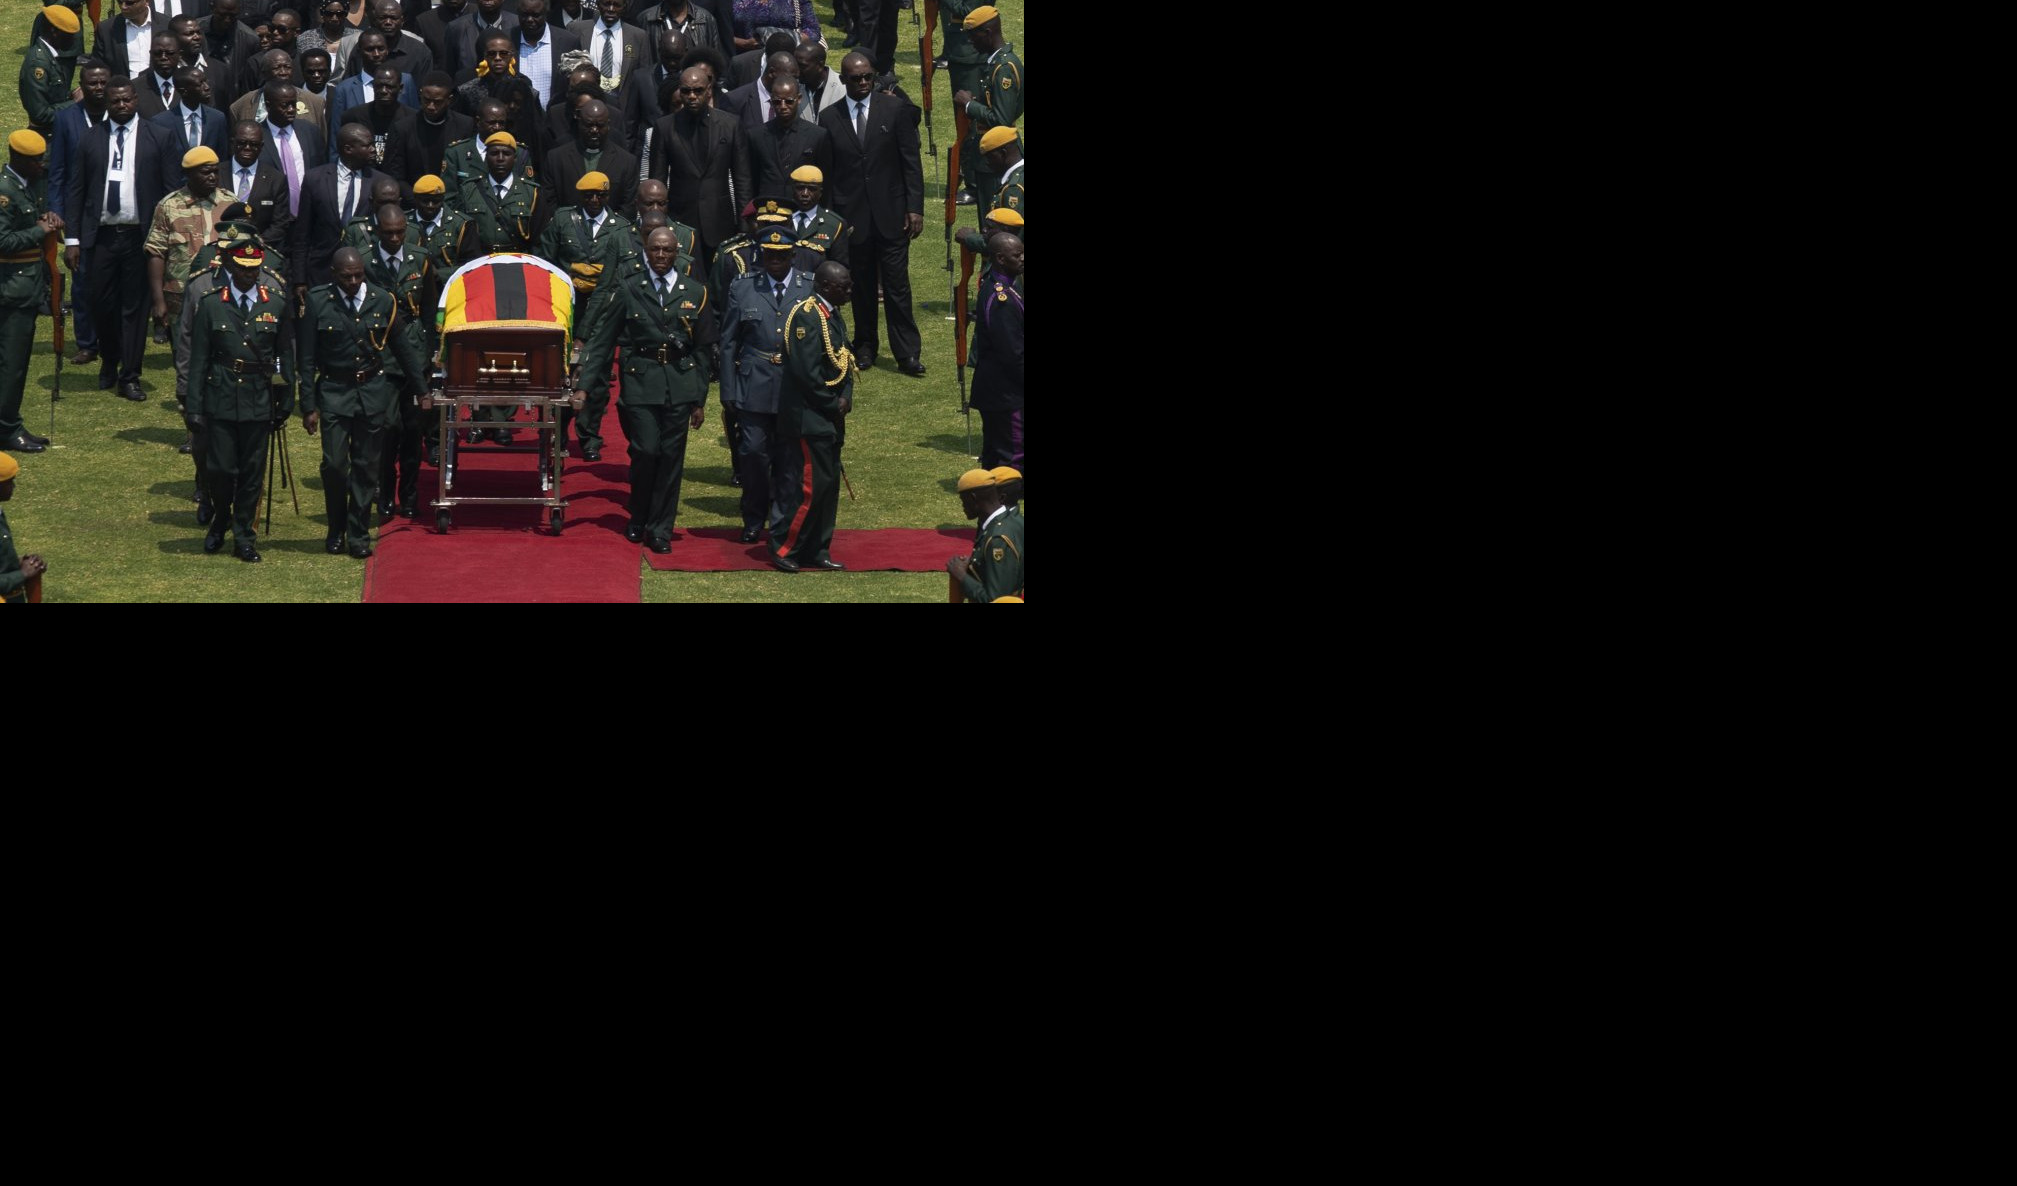 (FOTO) MUGABE ĆE BITI SAHRANJEN U MAUZOLEJU! Danas ceremonija državne sahrane bivšeg predsednika Zimbabvea!